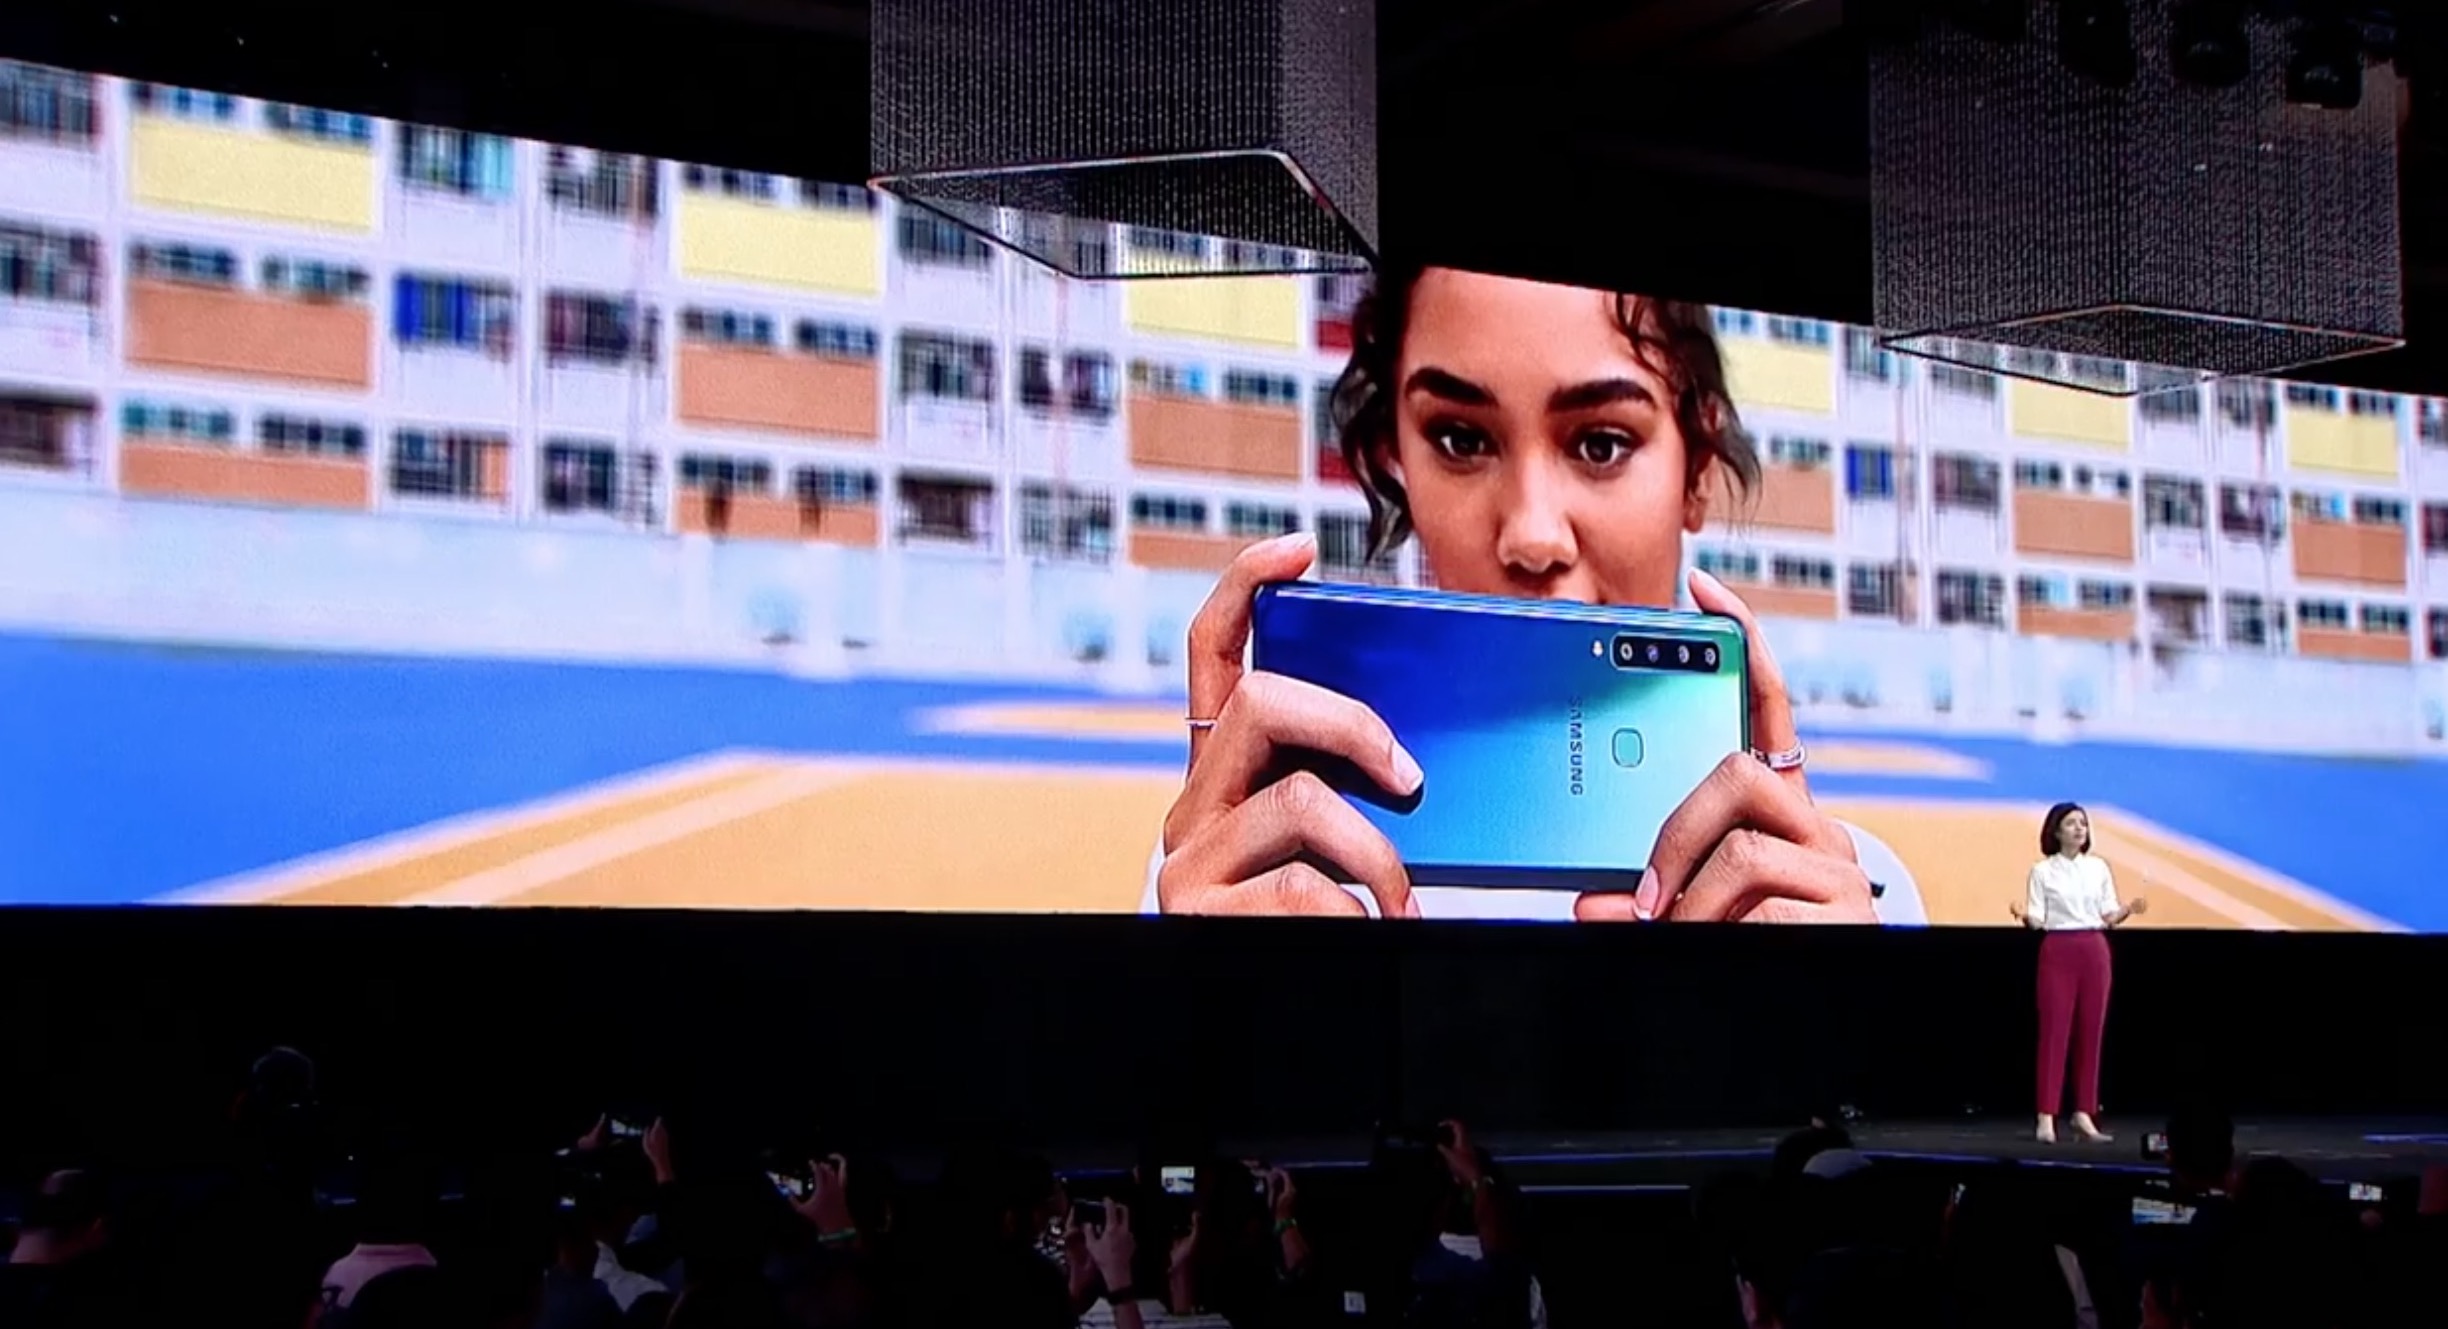 Samsung chính thức ra
mắt Galaxy A9 (2018) với 4 camera sau, Snapdragon 660, 6/8GB
RAM, pin 3800mAh